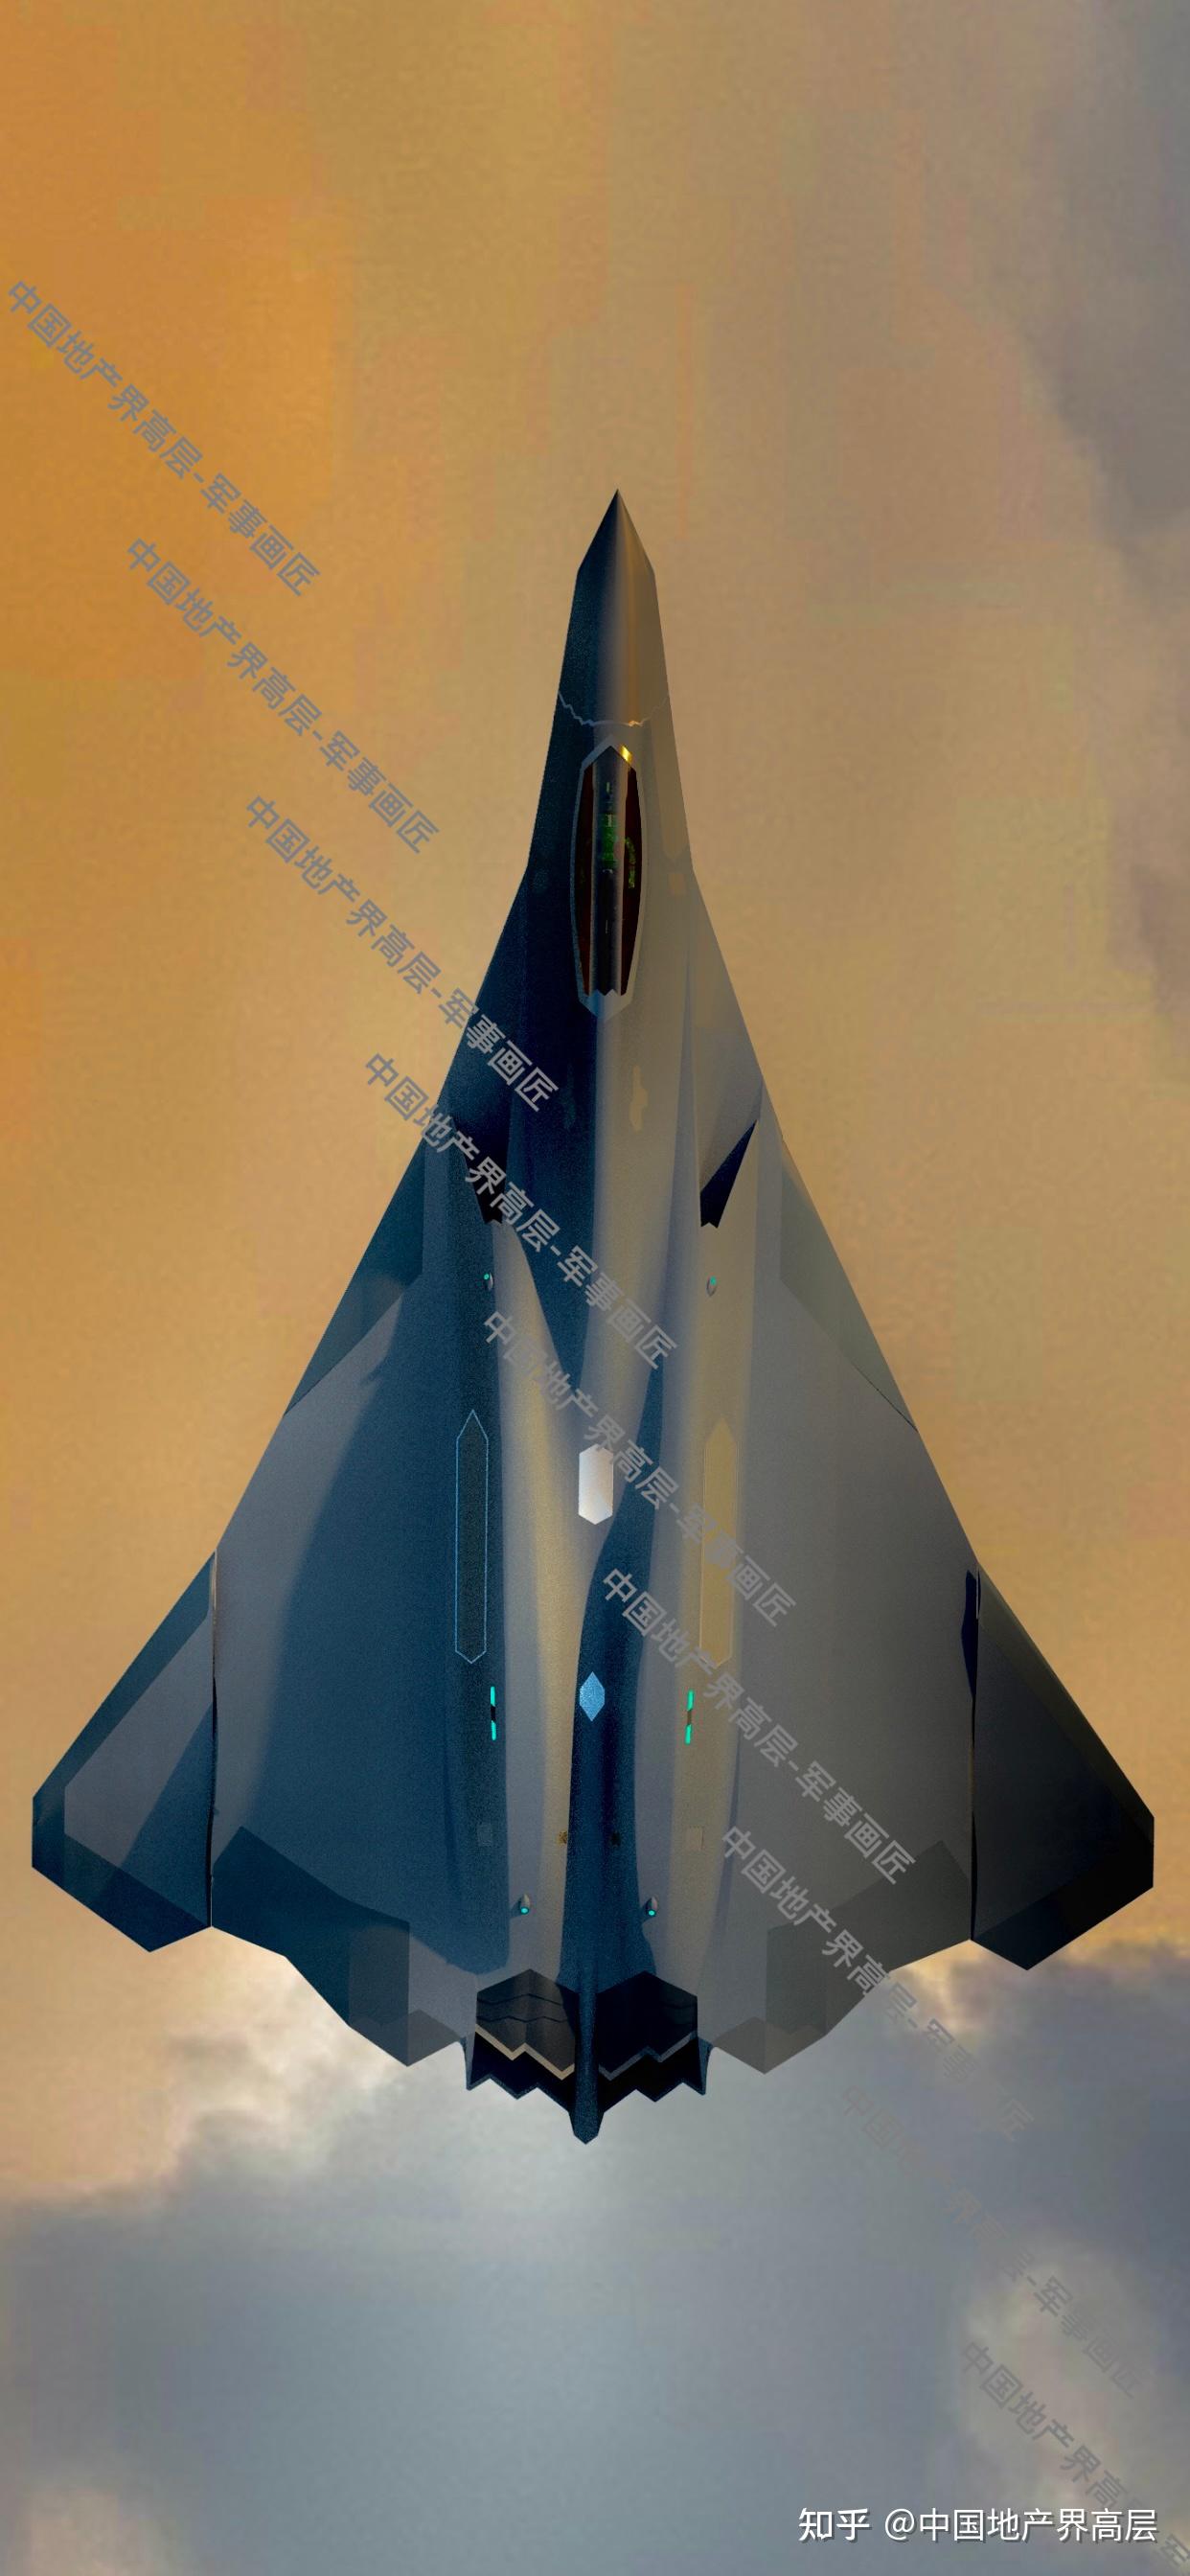 致敬未来军事科技-个人原创第六代战机翼型概念设计 - 知乎